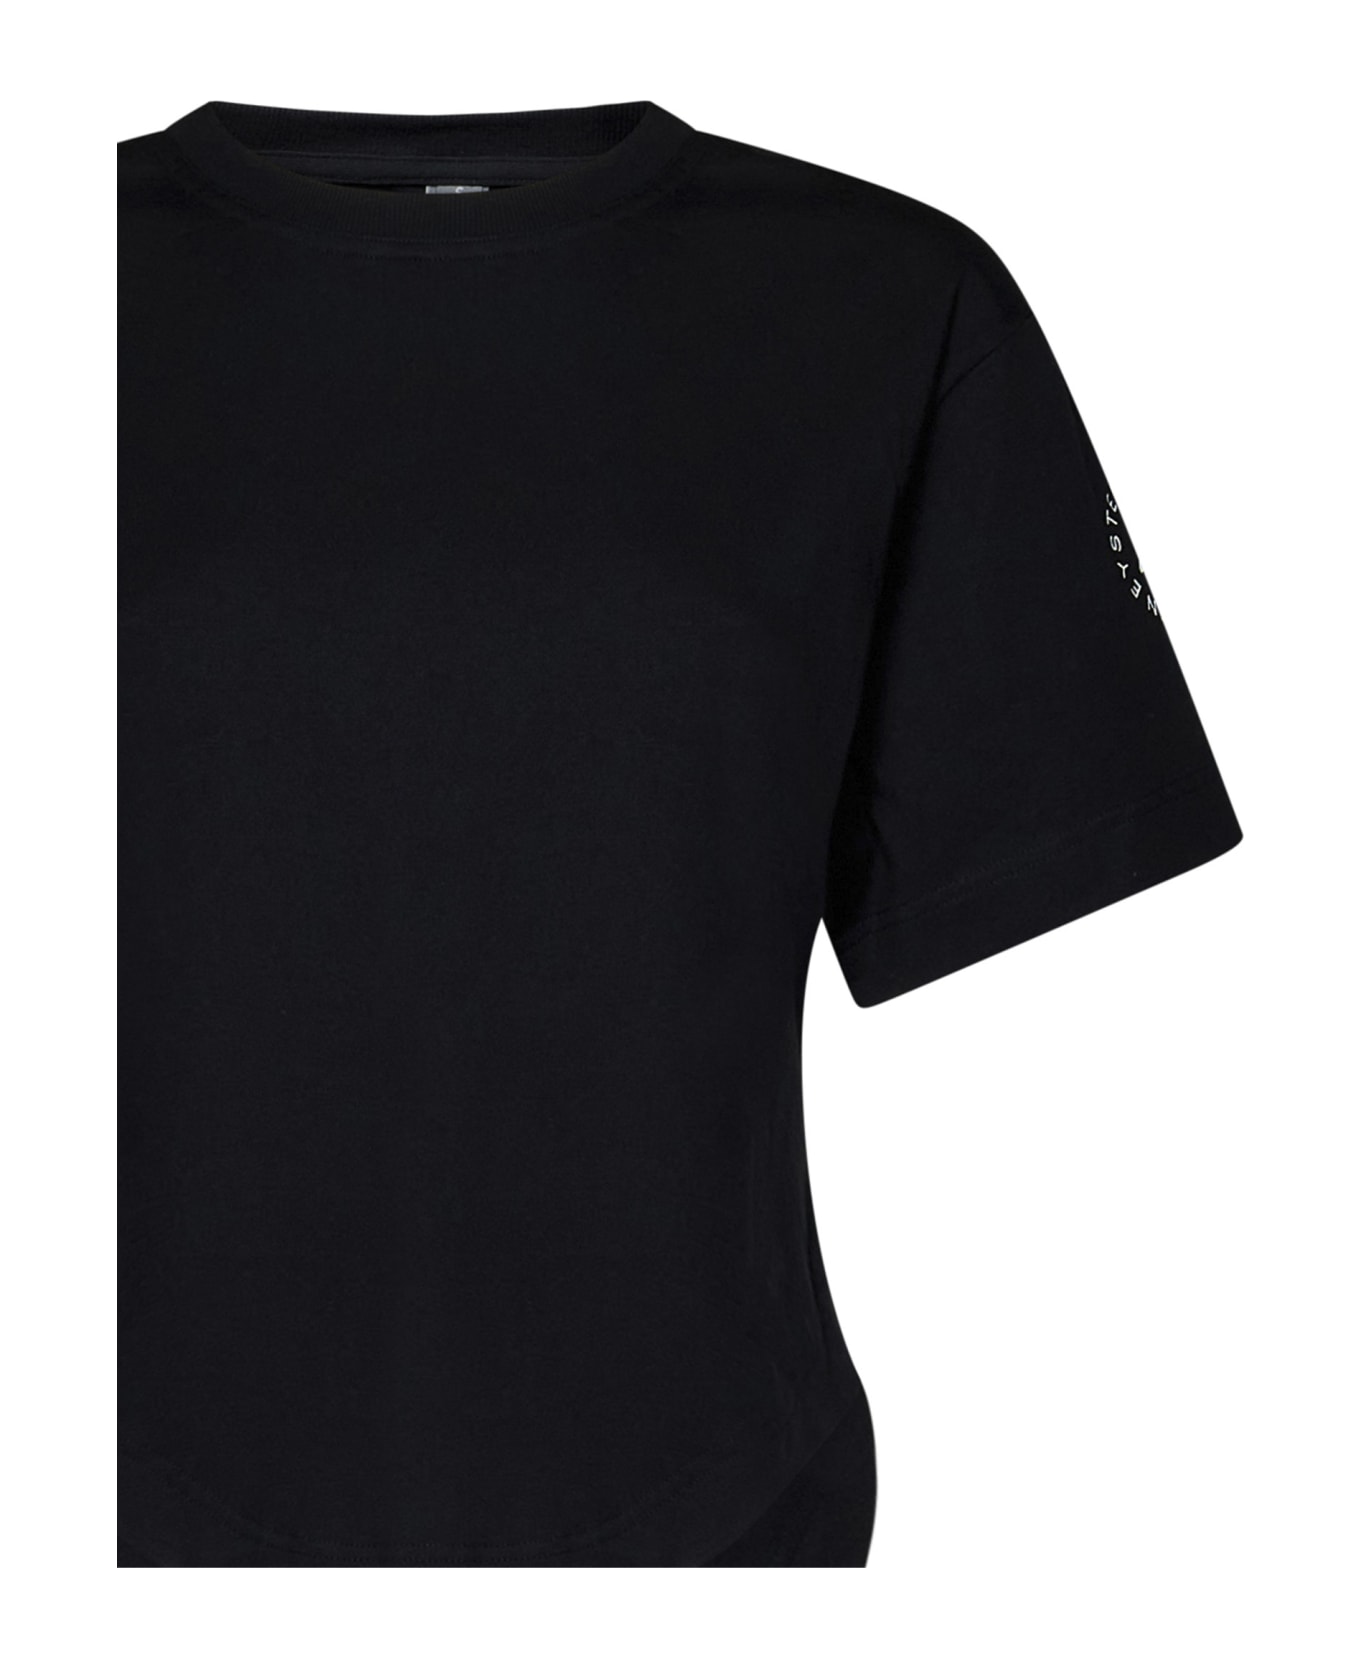 Adidas by Stella McCartney T-shirt - Black